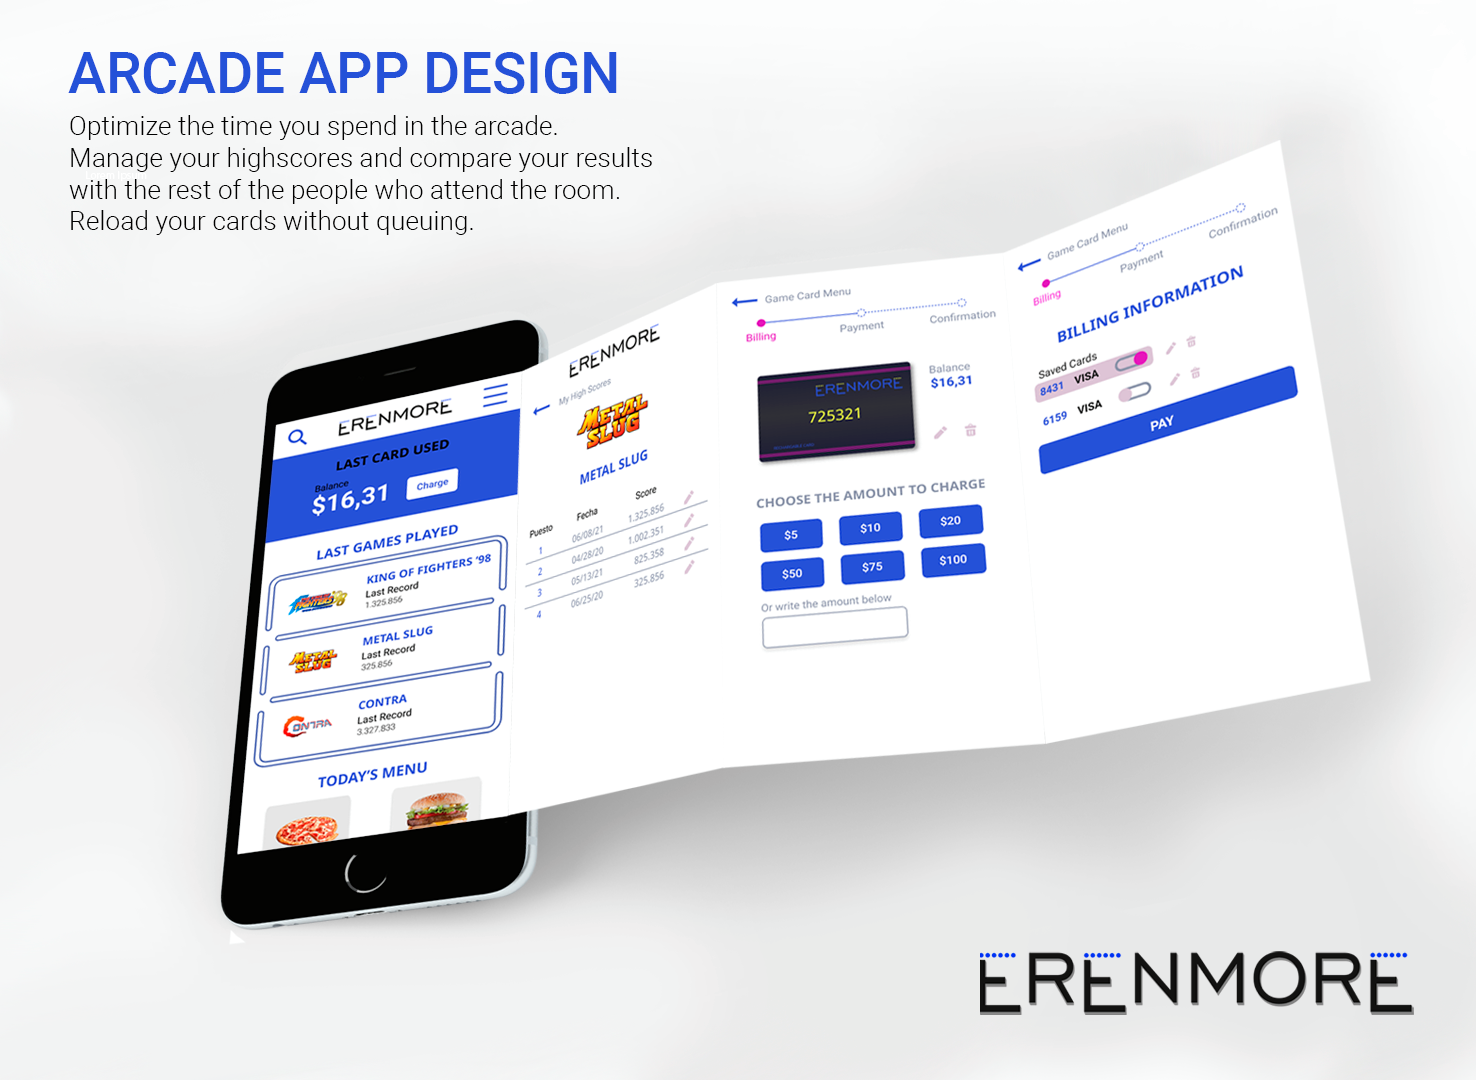 Presentación de la app diseñada para el arcade Erenmore